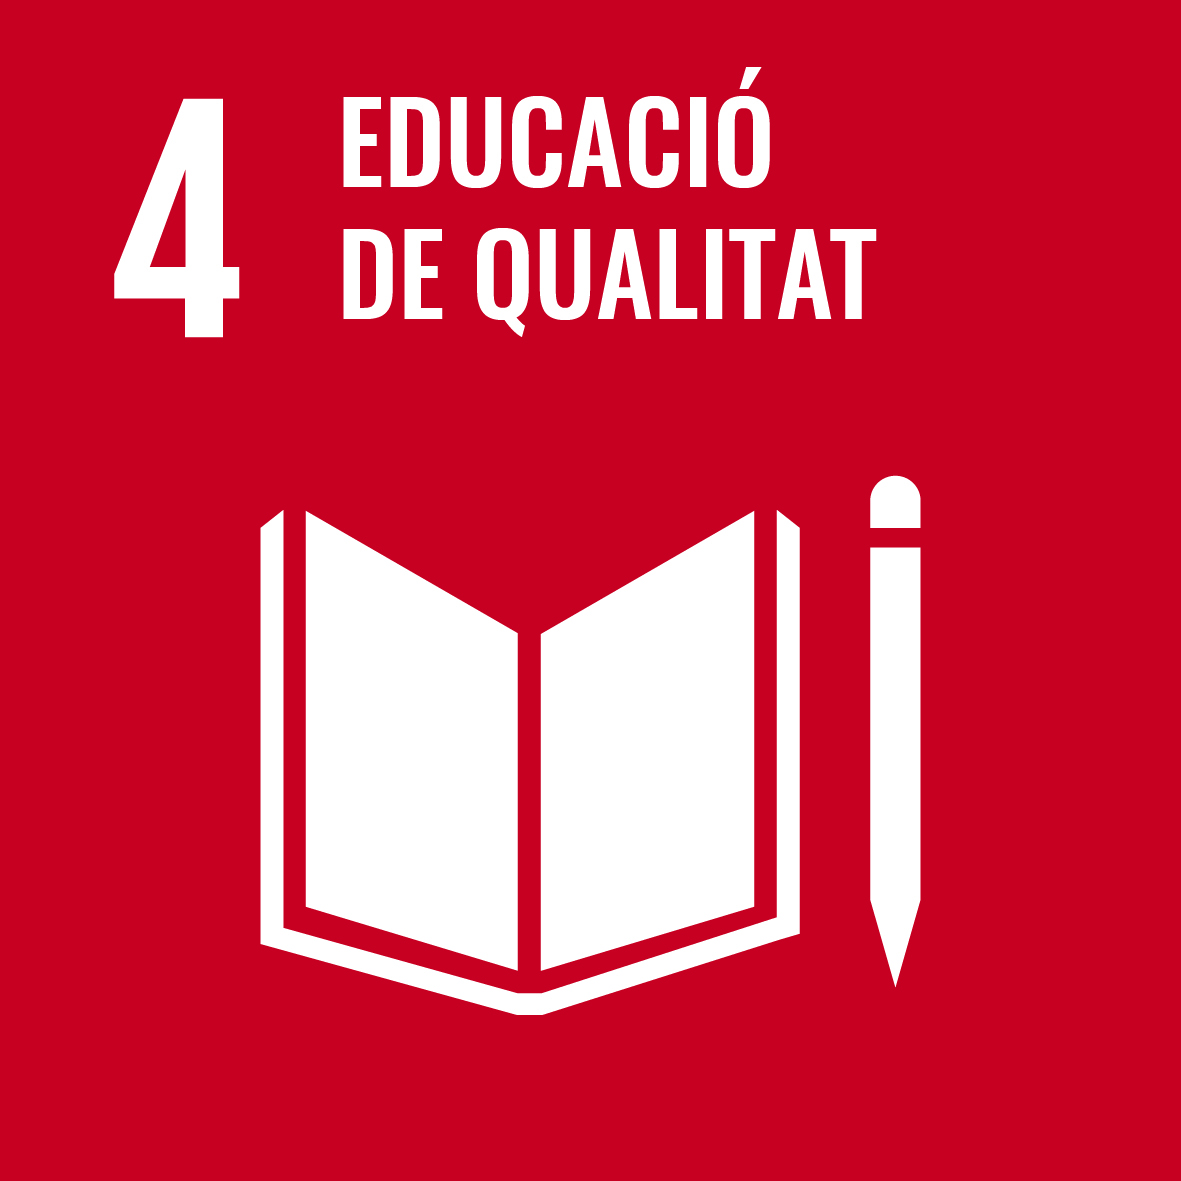 ODS Educació de qualitat